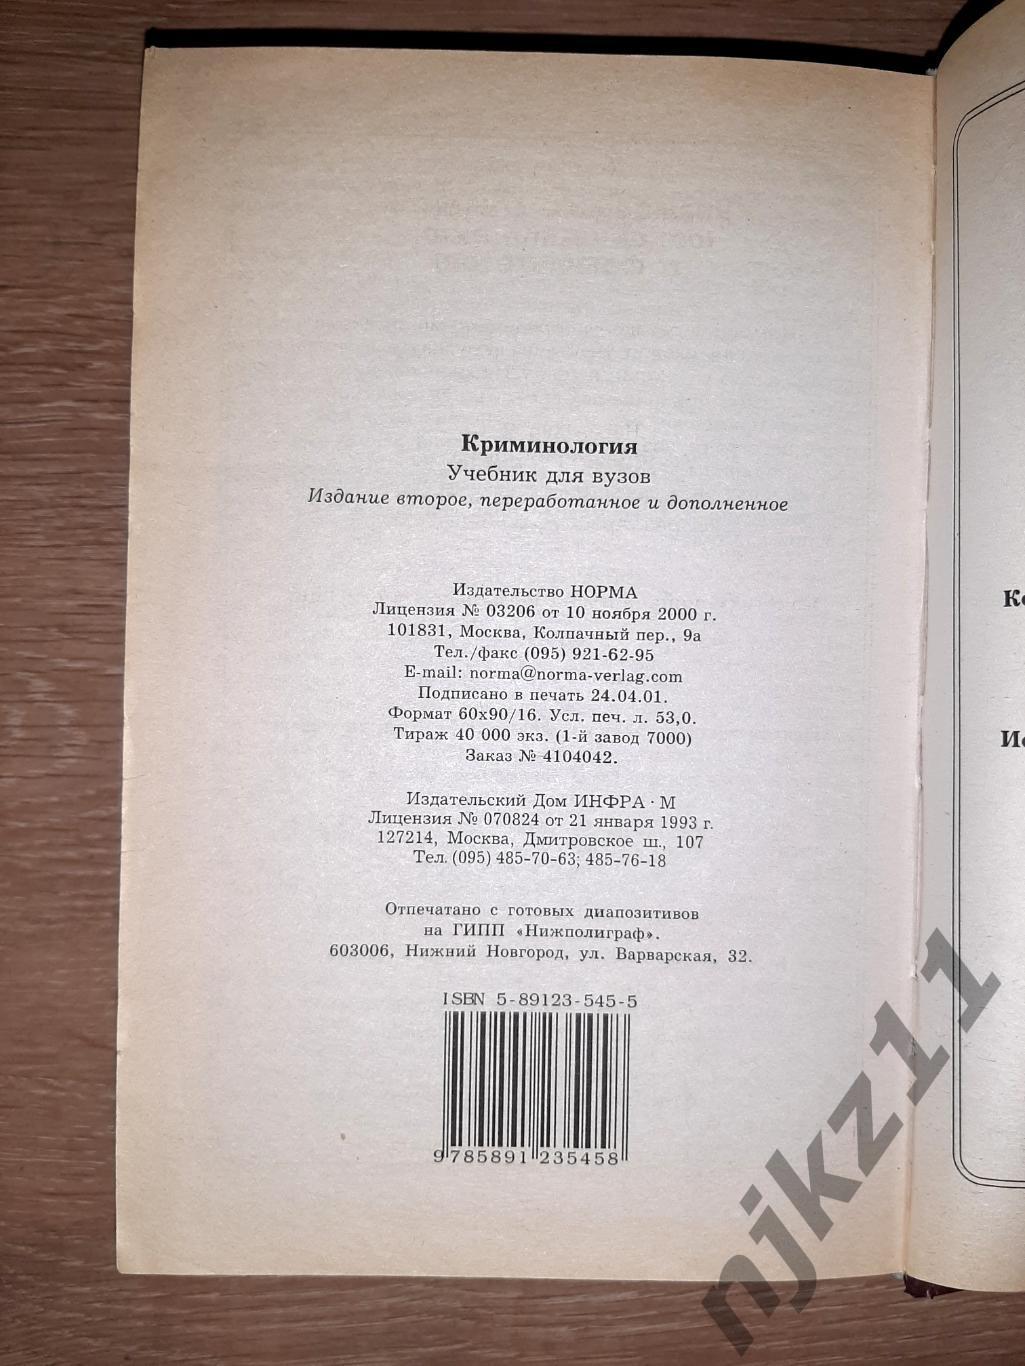 Долгова А.И. Криминология. Учебник для вузов 848стр. 4